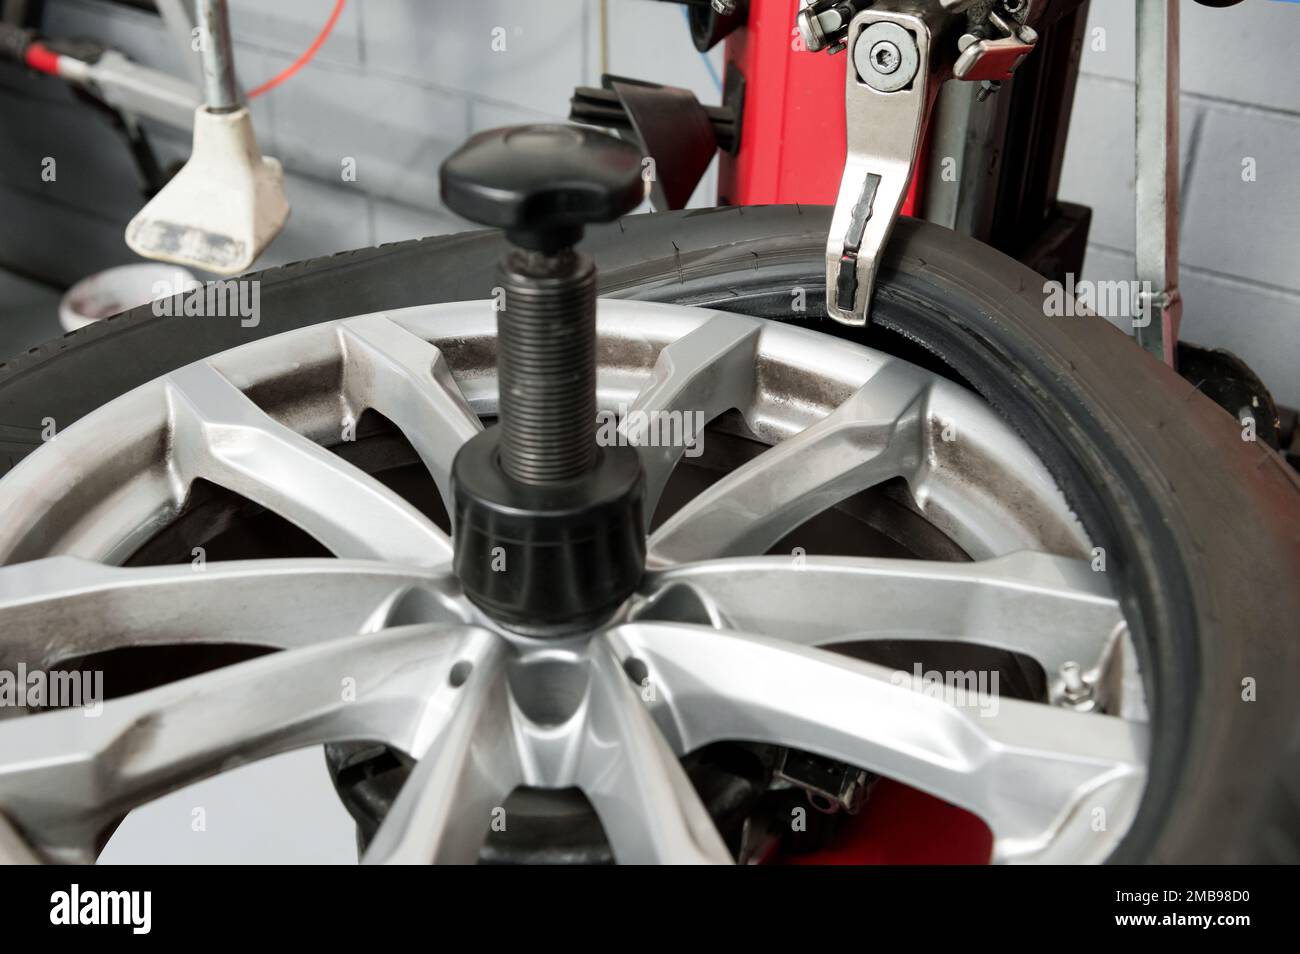 Depuis le dessus de la machine, retirer le pneu en caoutchouc de la roue pendant la journée de travail dans un atelier moderne Banque D'Images